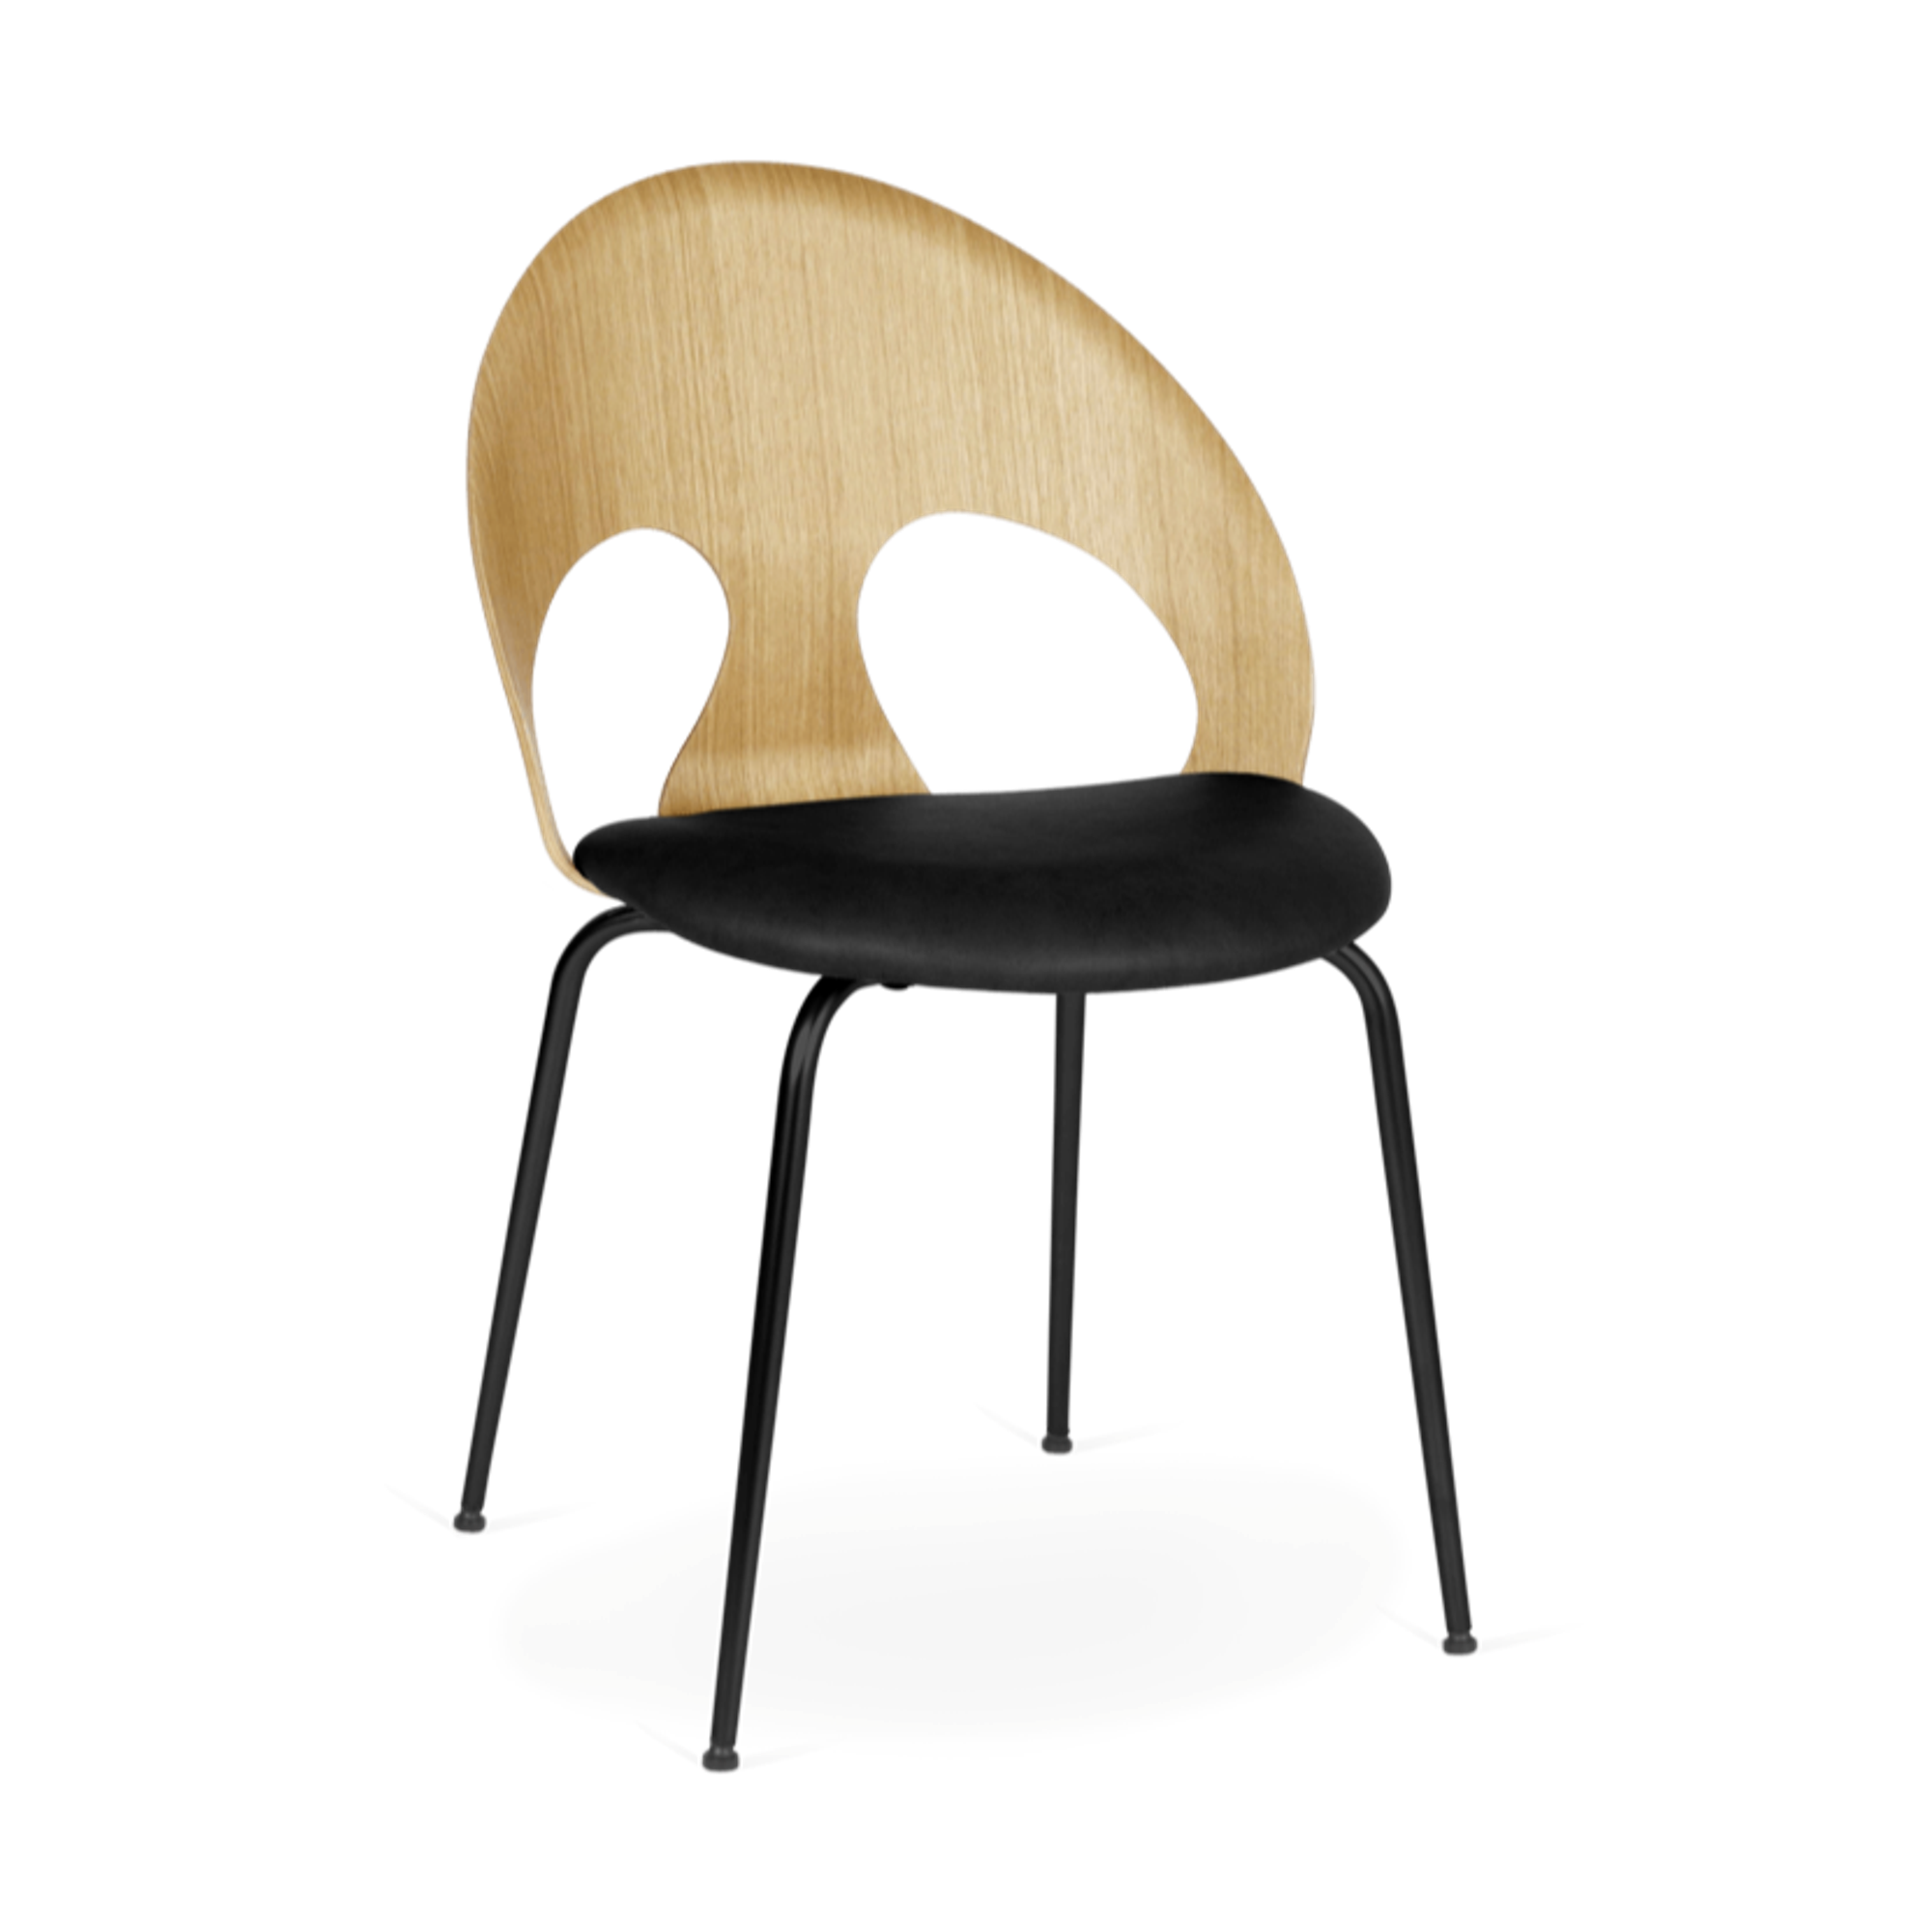 VERMUND VL1100 Dining Chair Natural Oak/Black Leather/Black Frame